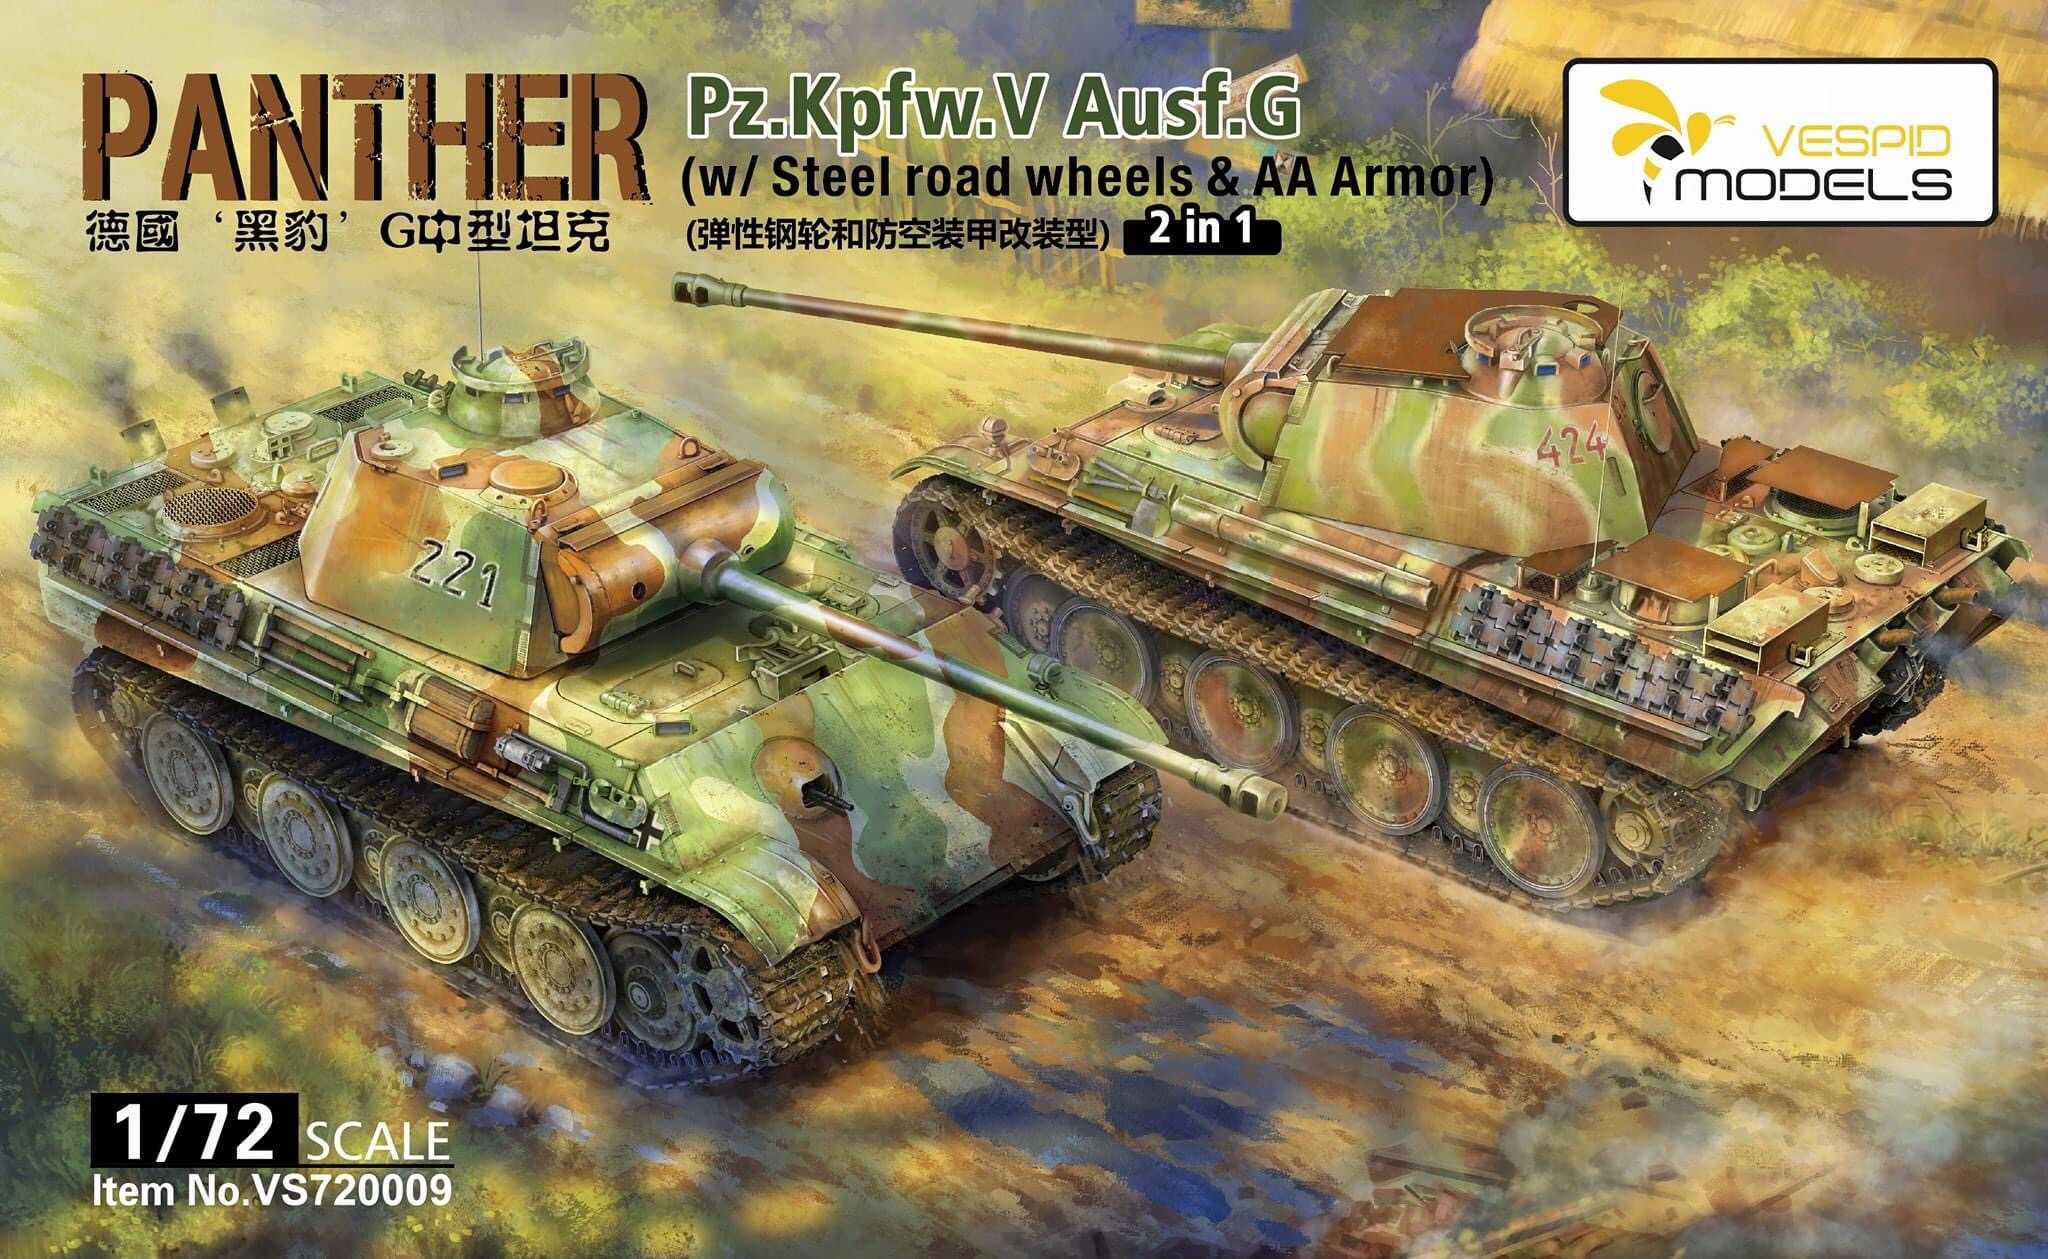 1:72 painted German tank panther Ausfg in metal 